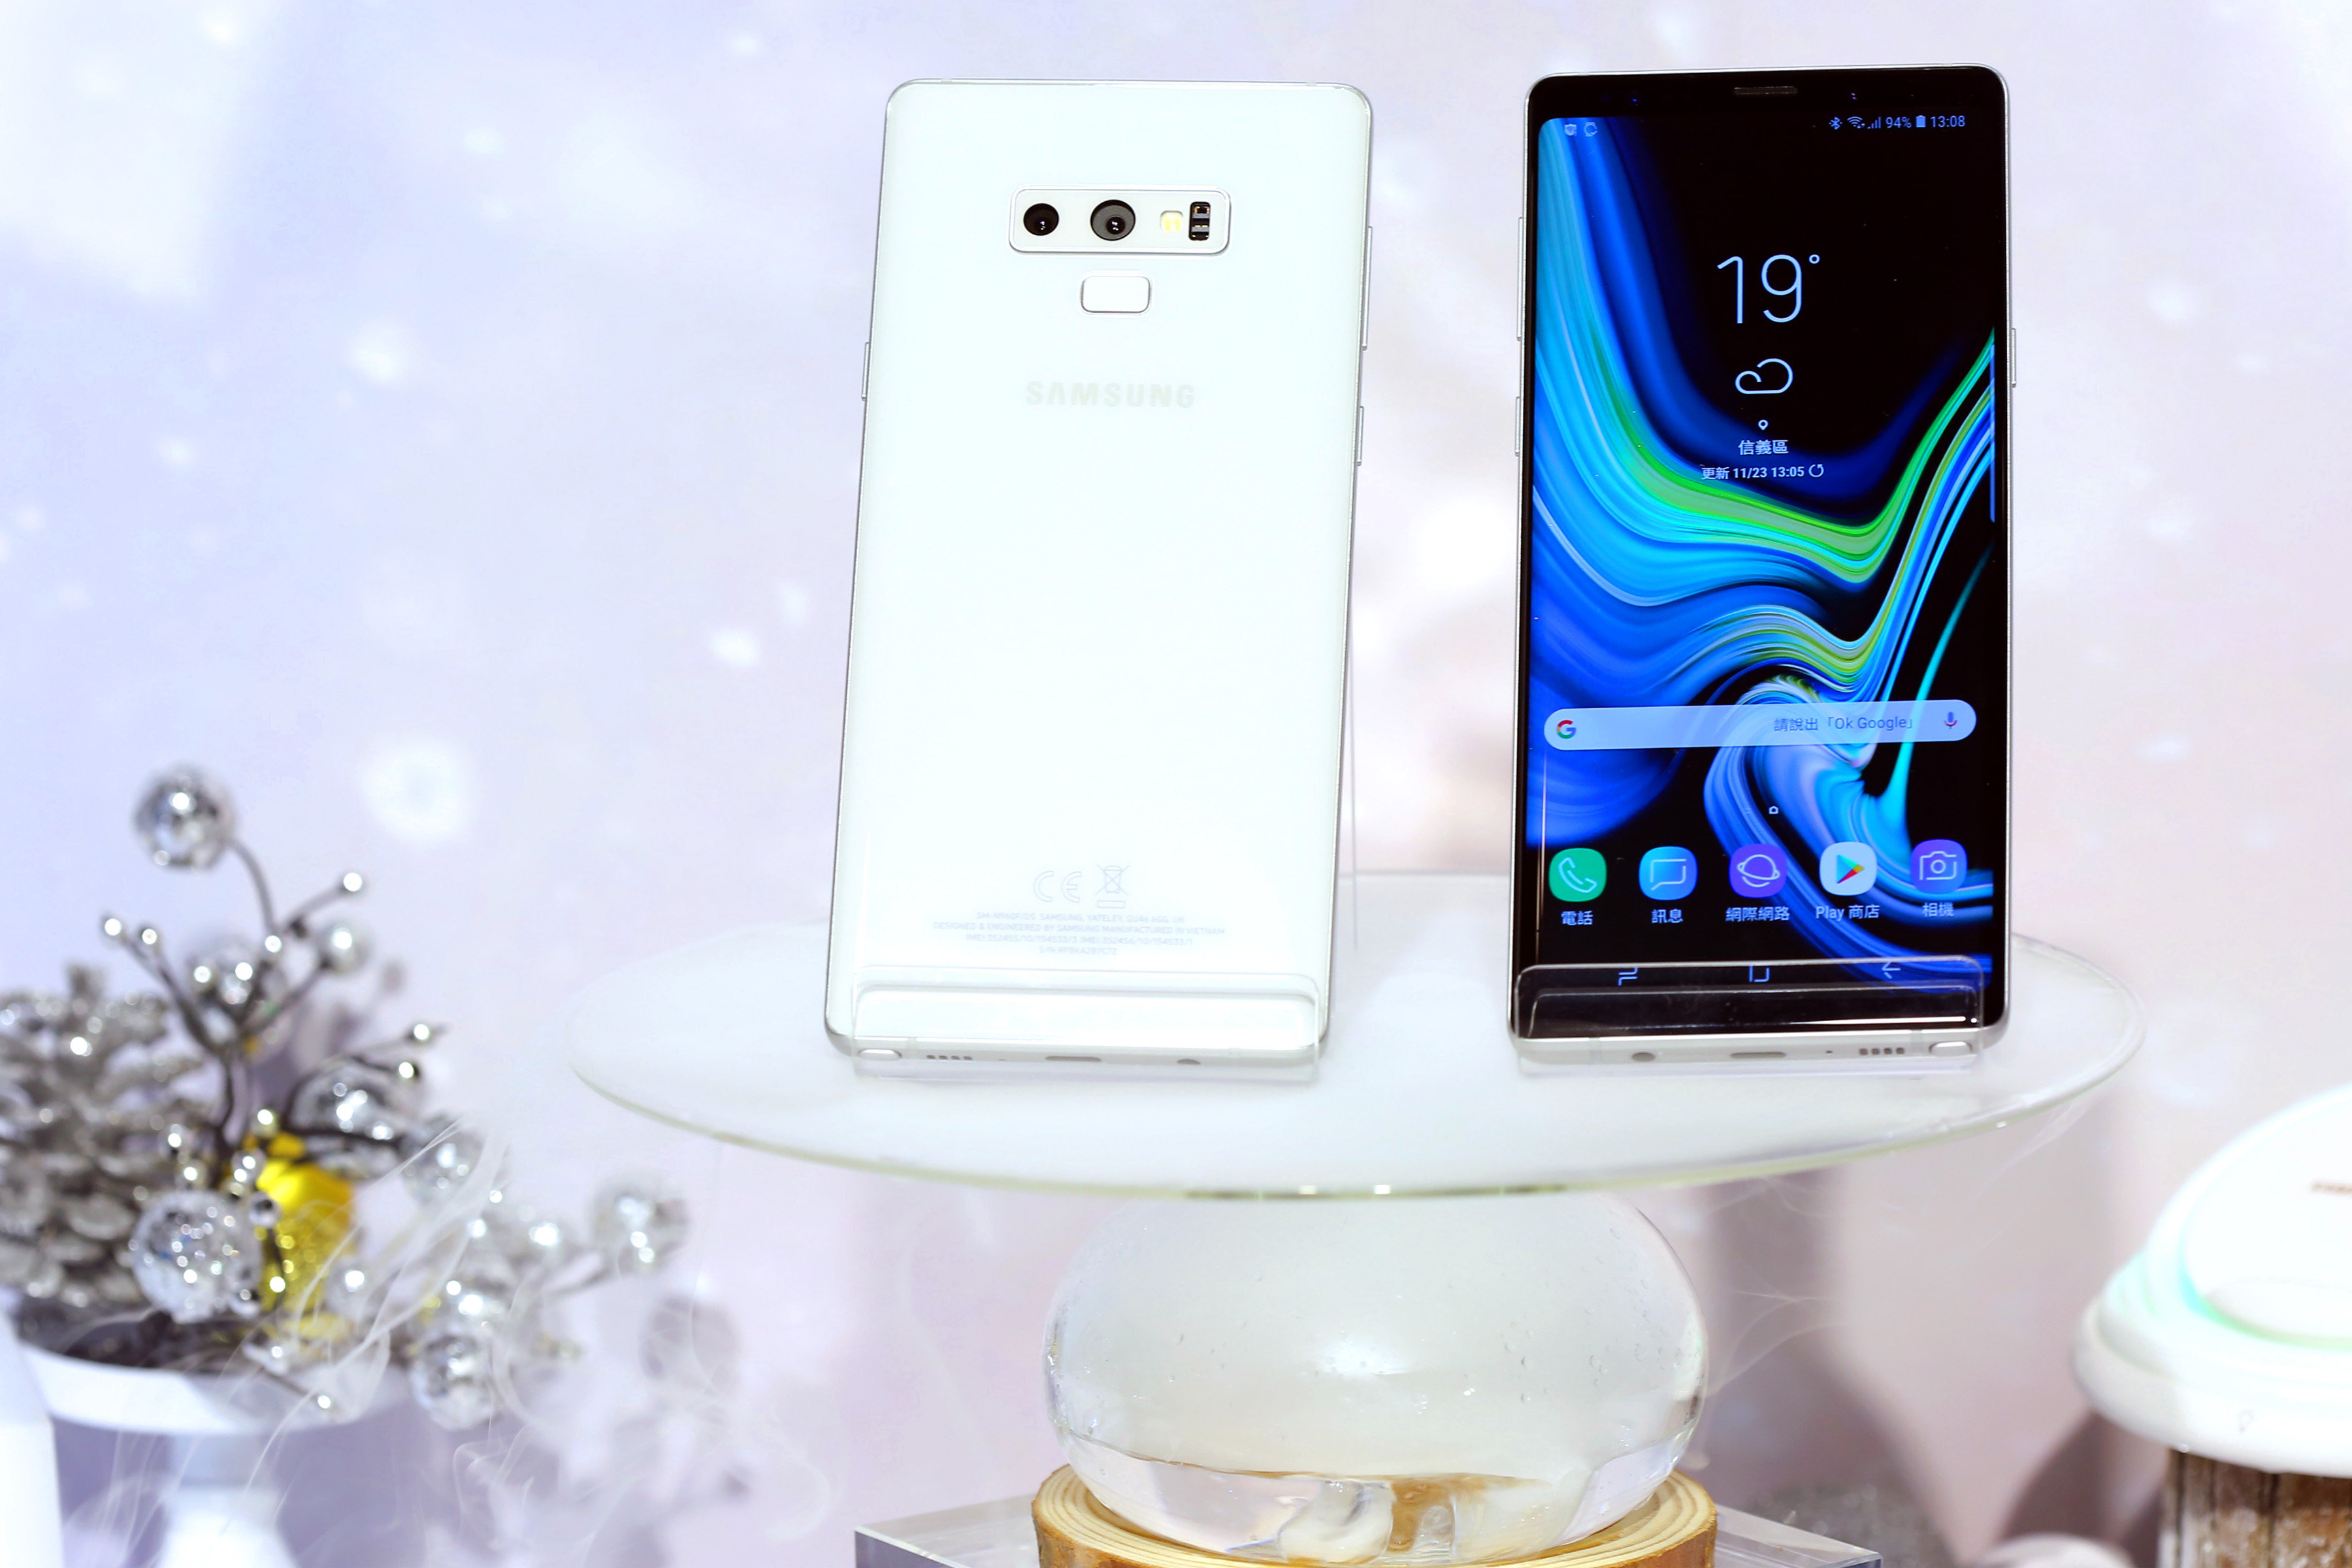 سامسونج تكشف الستار رسمياً عن النسخة البيضاء الرائعة جوال Galaxy Note 9 مع جائزة مدونة نظام أون لاين التقنية